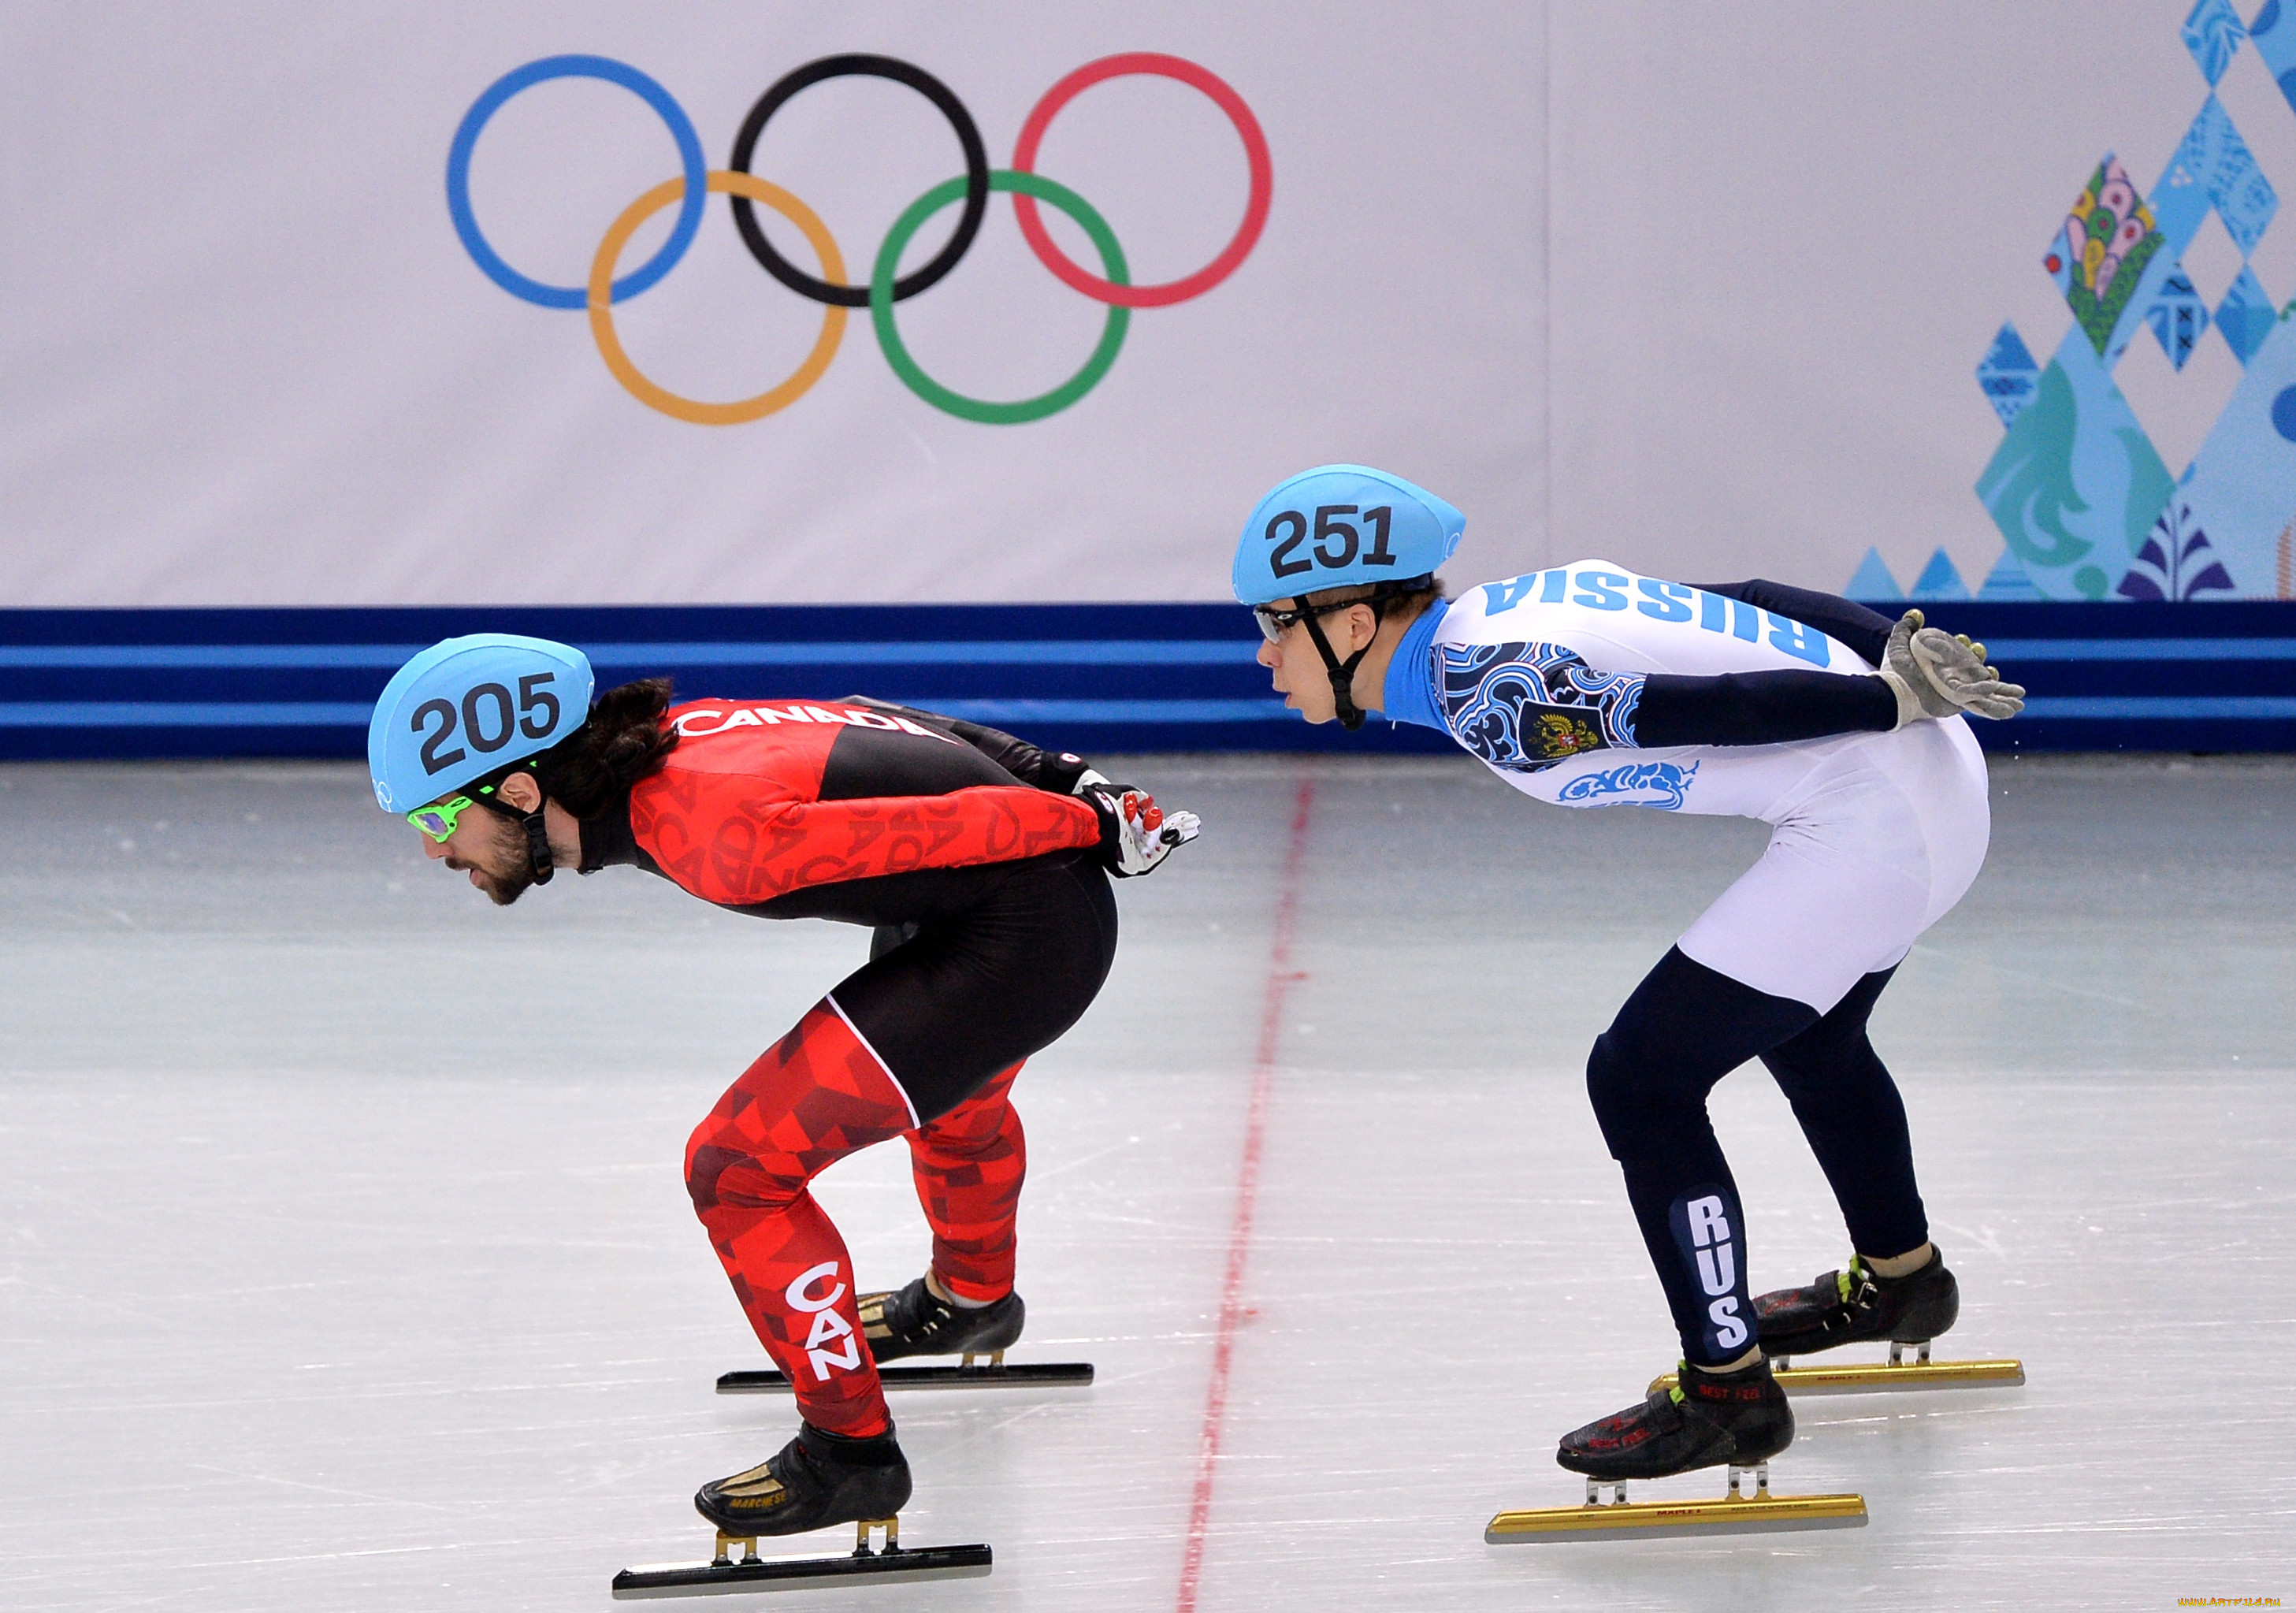 Как называется свод олимпийских. Шорт трек Сочи 2014. Олимпийские игры в Сочи 2014 конькобежный спорт. Конькобежный спорт Сочи Олимпийские игры.